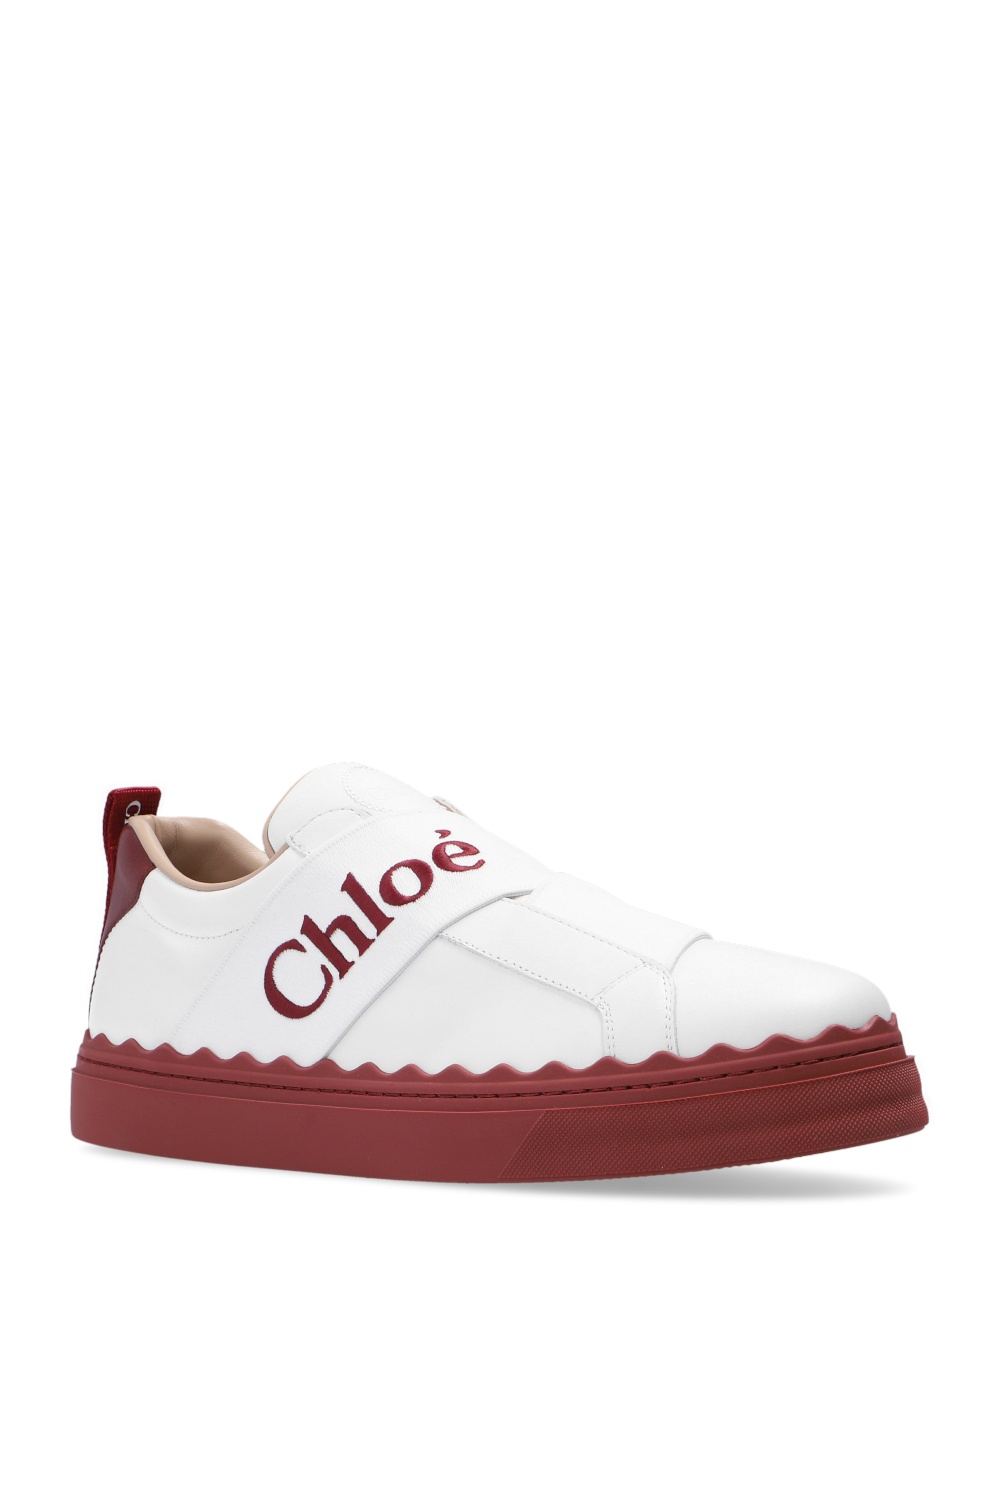 Chloé 'Lauren' sneakers | Women's Shoes | IetpShops